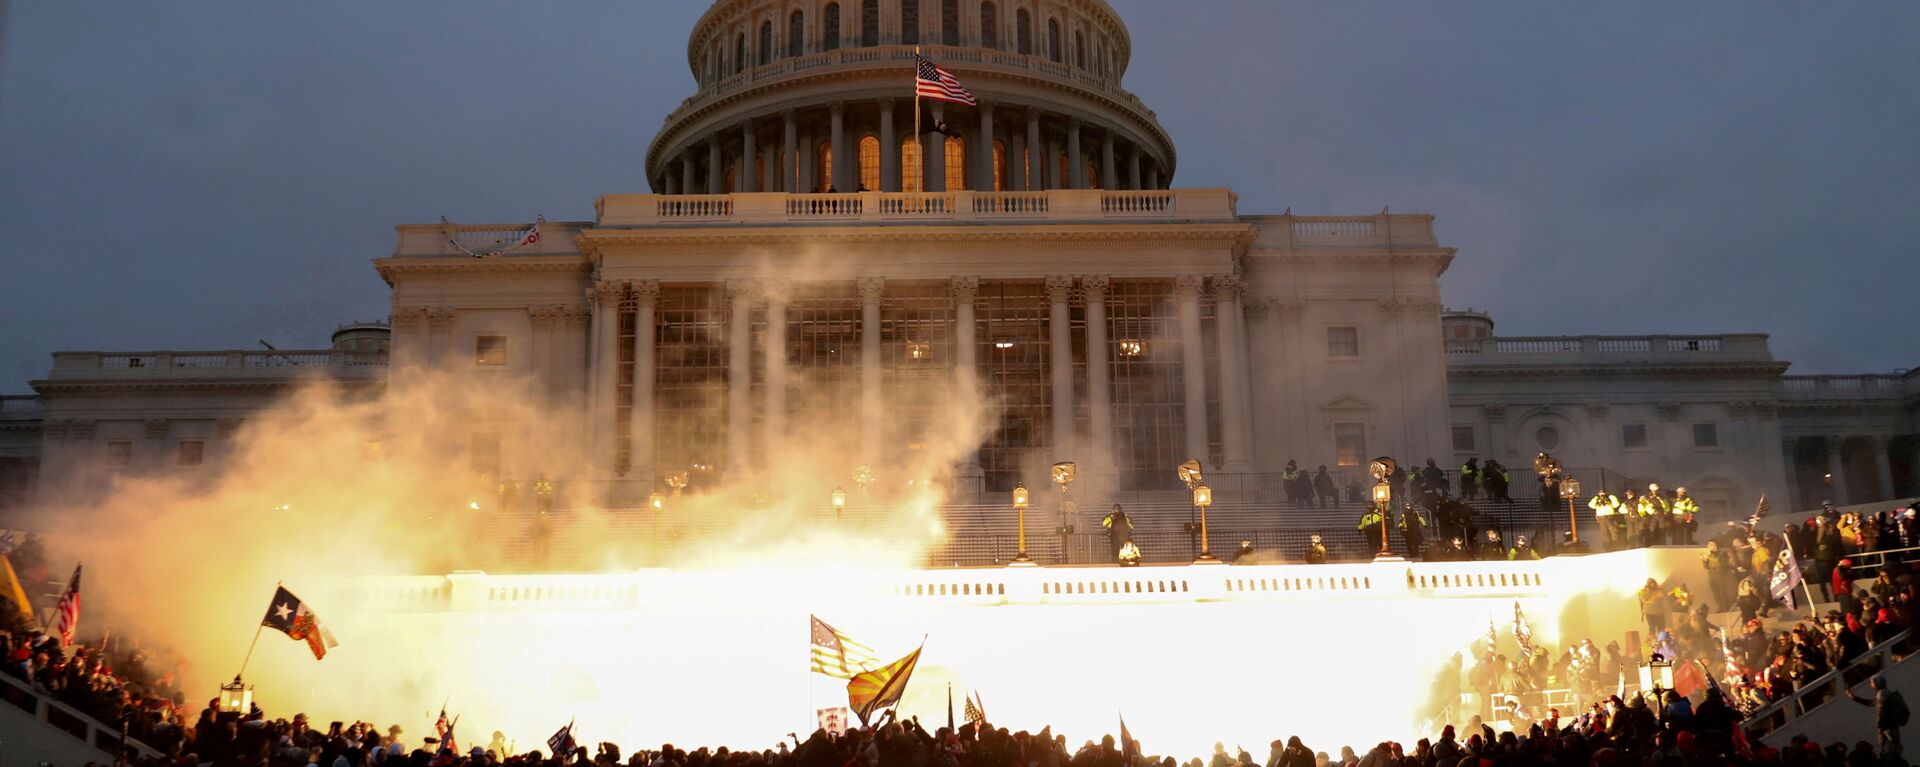 Vụ nổ bên ngoài tòa nhà Quốc hội trong thời gian biểu tình của những người ủng hộ Donald Trump ở Washington - Sputnik Việt Nam, 1920, 26.12.2021